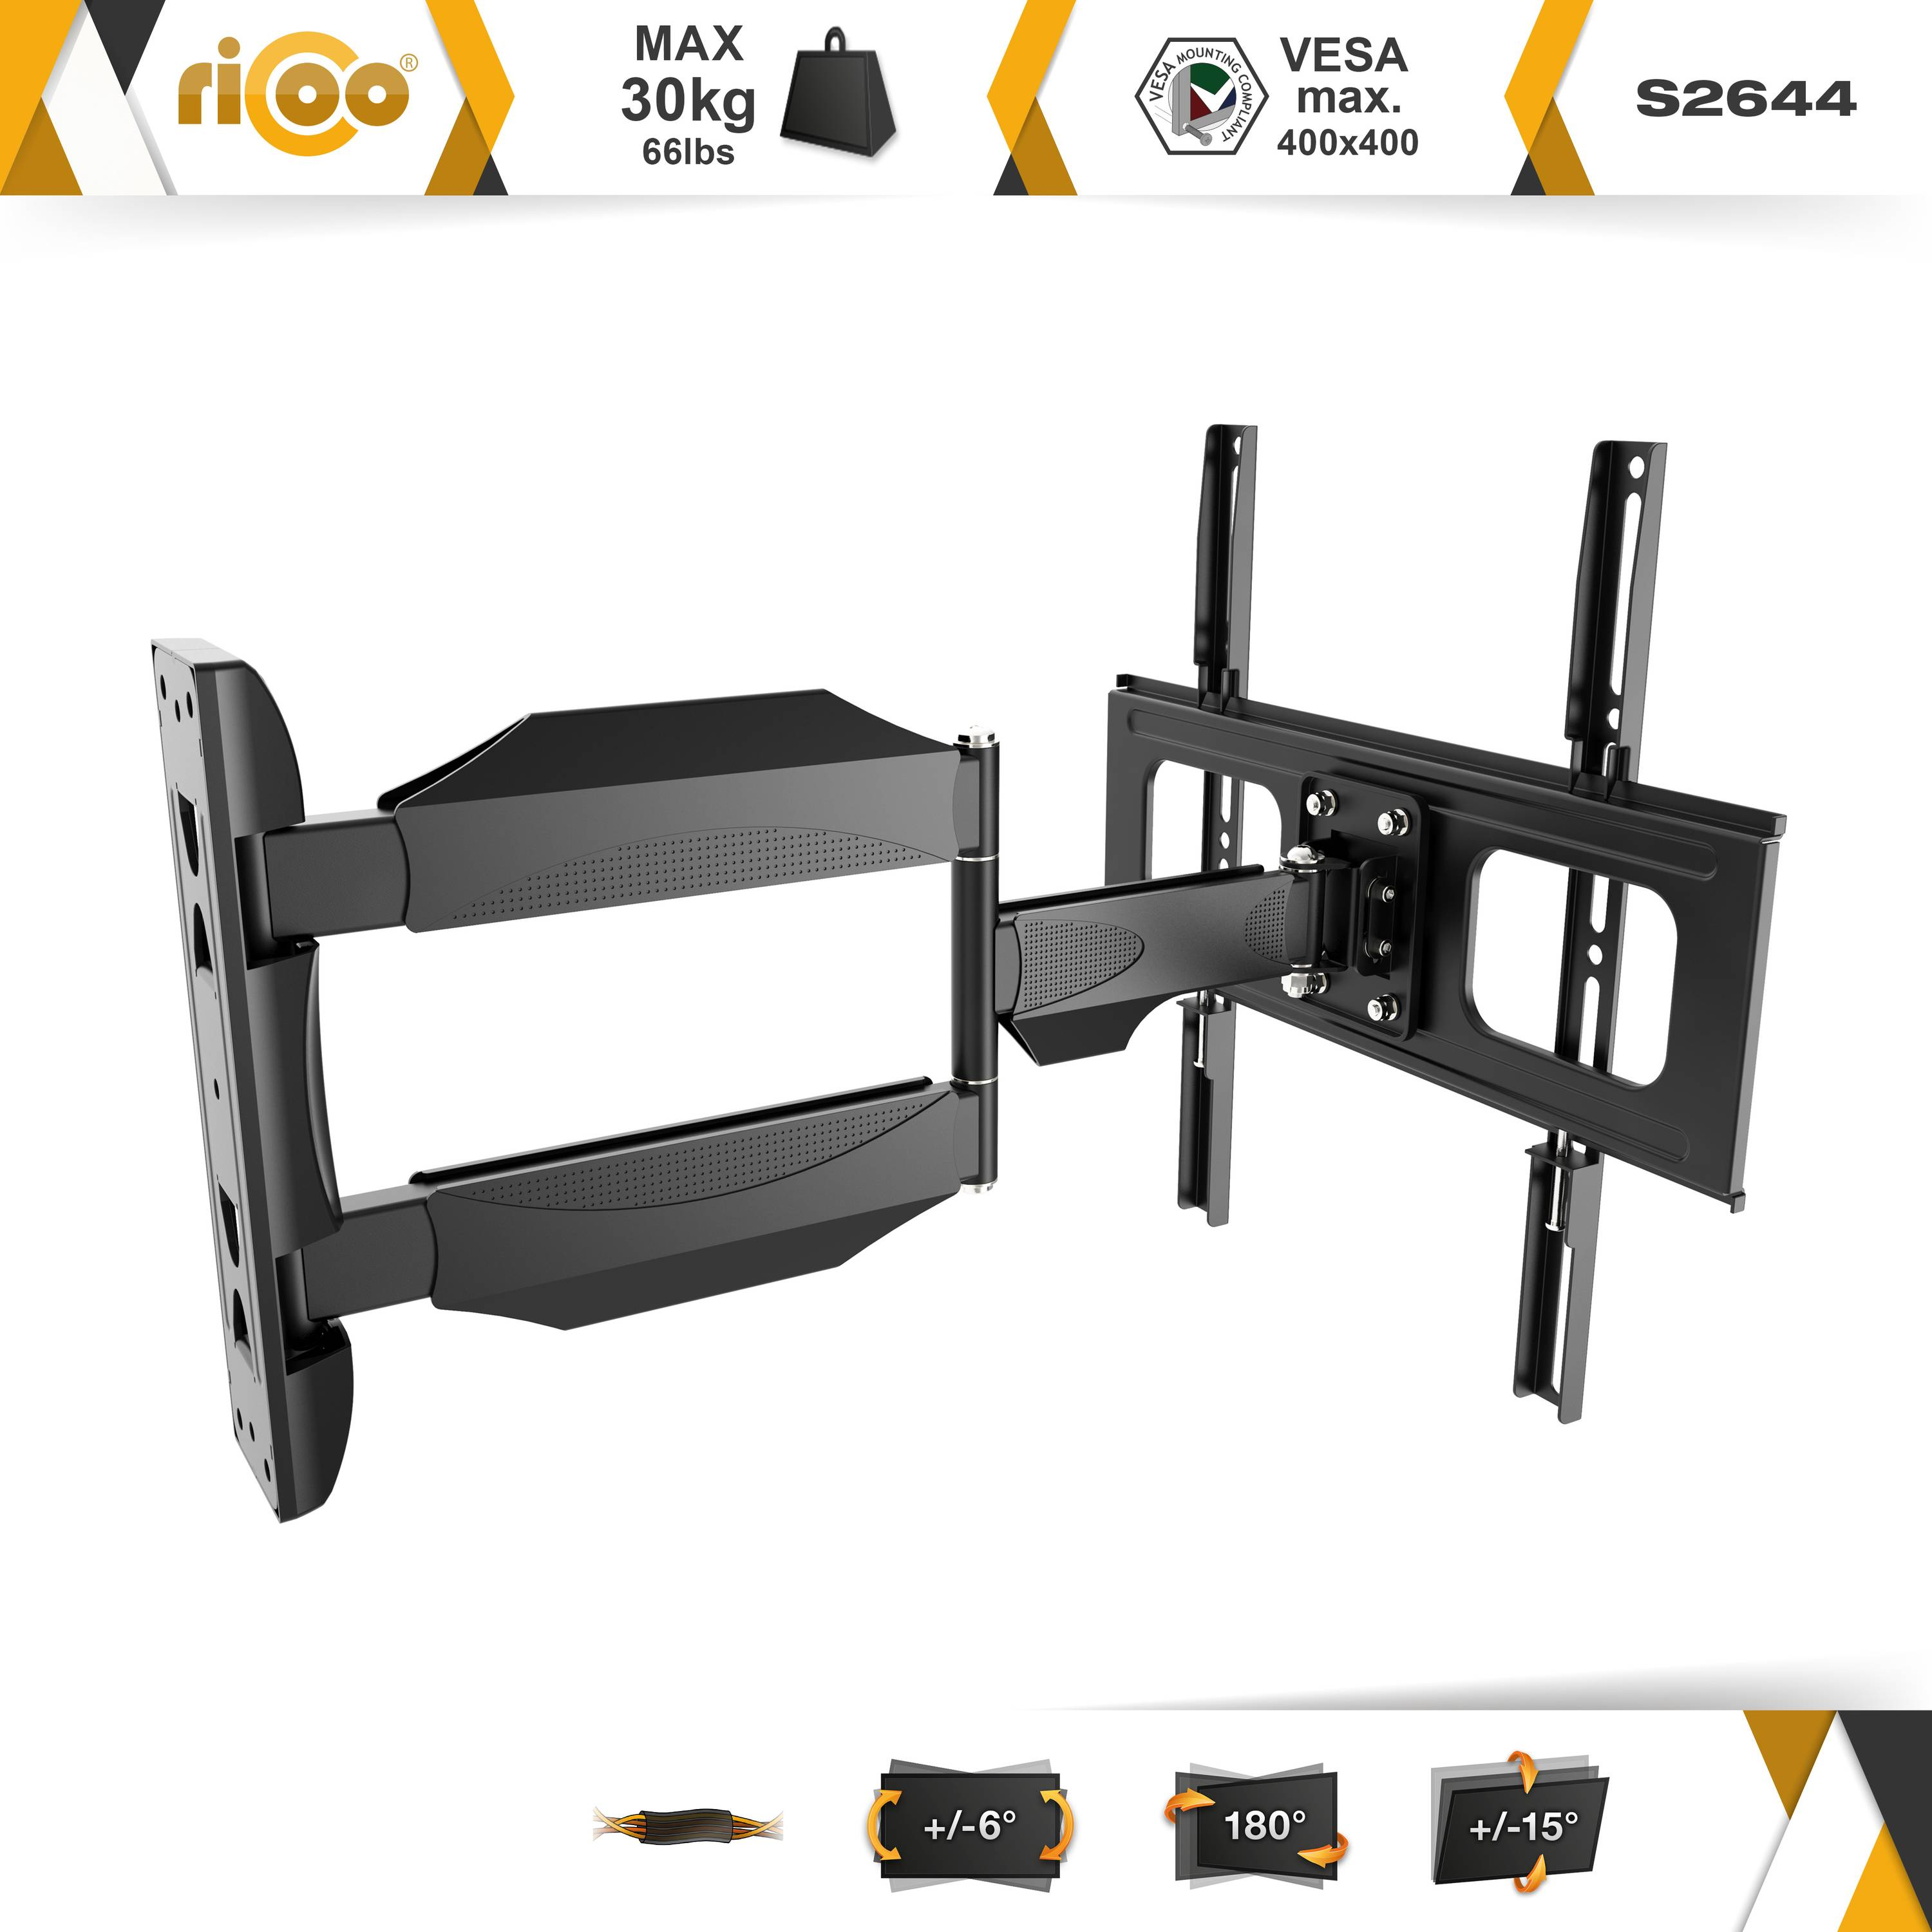 RICOO S2644 schwenkbar neigbar ausziehbar 400 bis VESA universal curved Wandhalterung, Fernseher TV auch Halterung Schwarz x 400